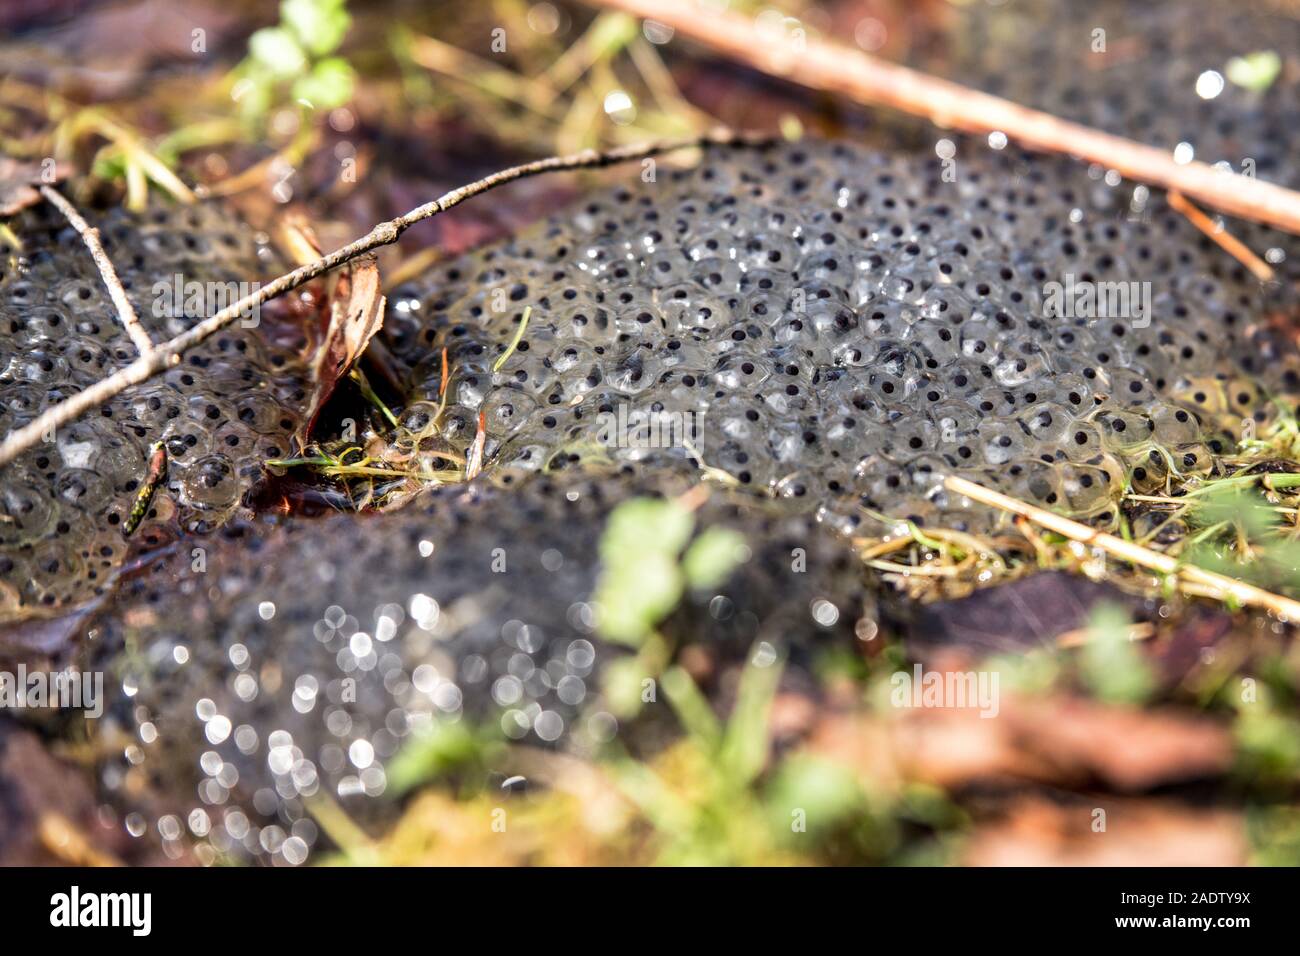 Viele Frosch in einen schlammigen Boden, Gefahr für die Trocknung oder Dehydratisierung spawn Stockfoto